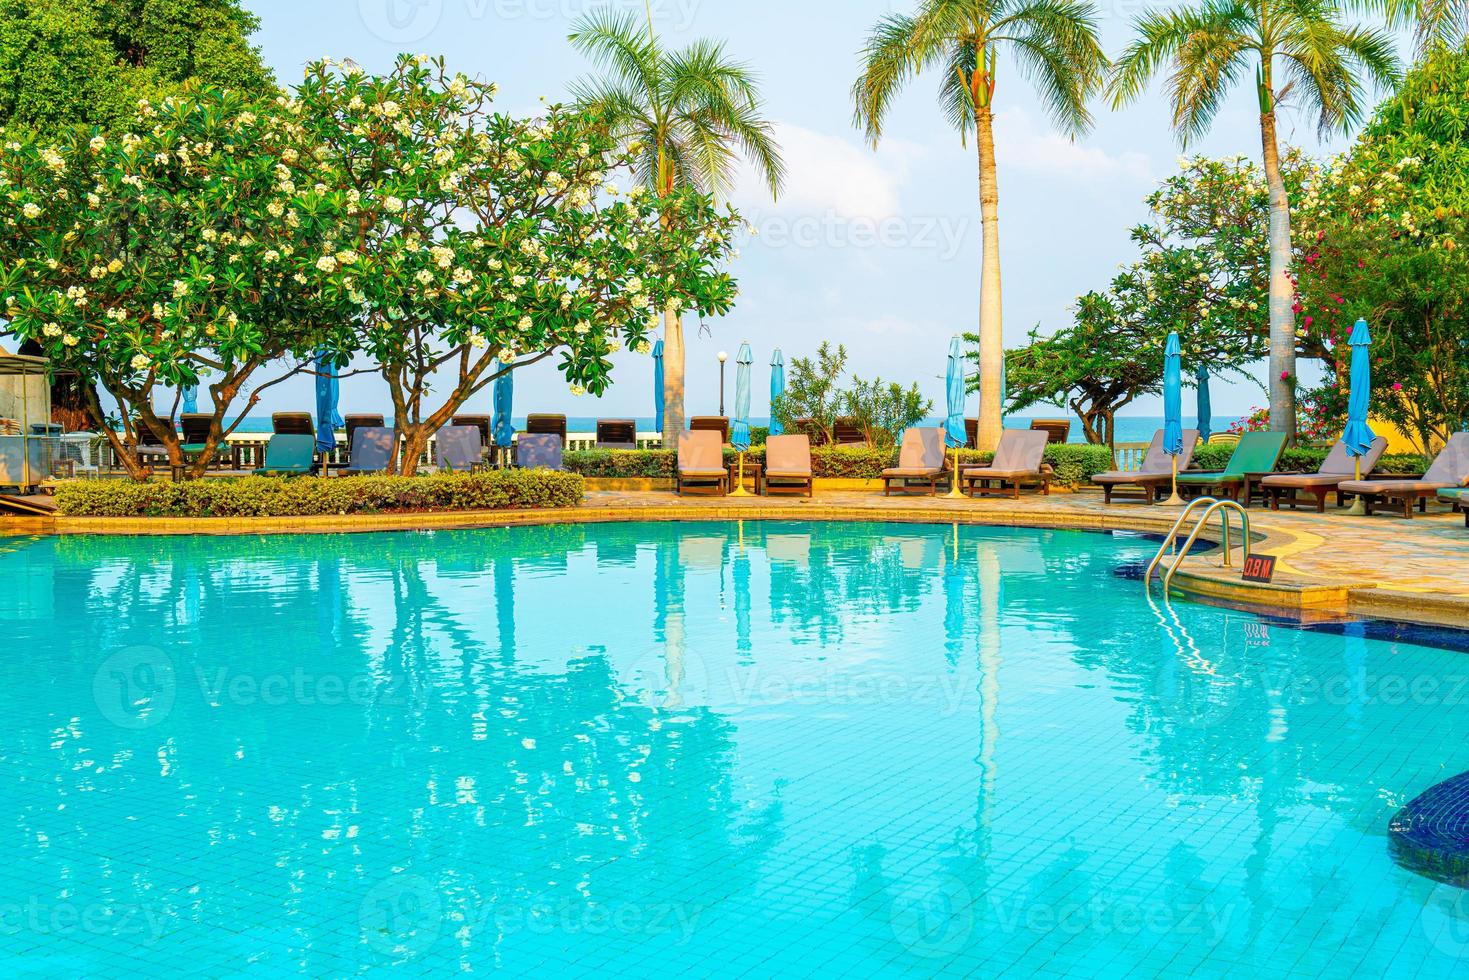 Liegepools und Sonnenschirme rund um den Swimmingpool mit Kokospalmen - Urlaubs- und Urlaubskonzept foto